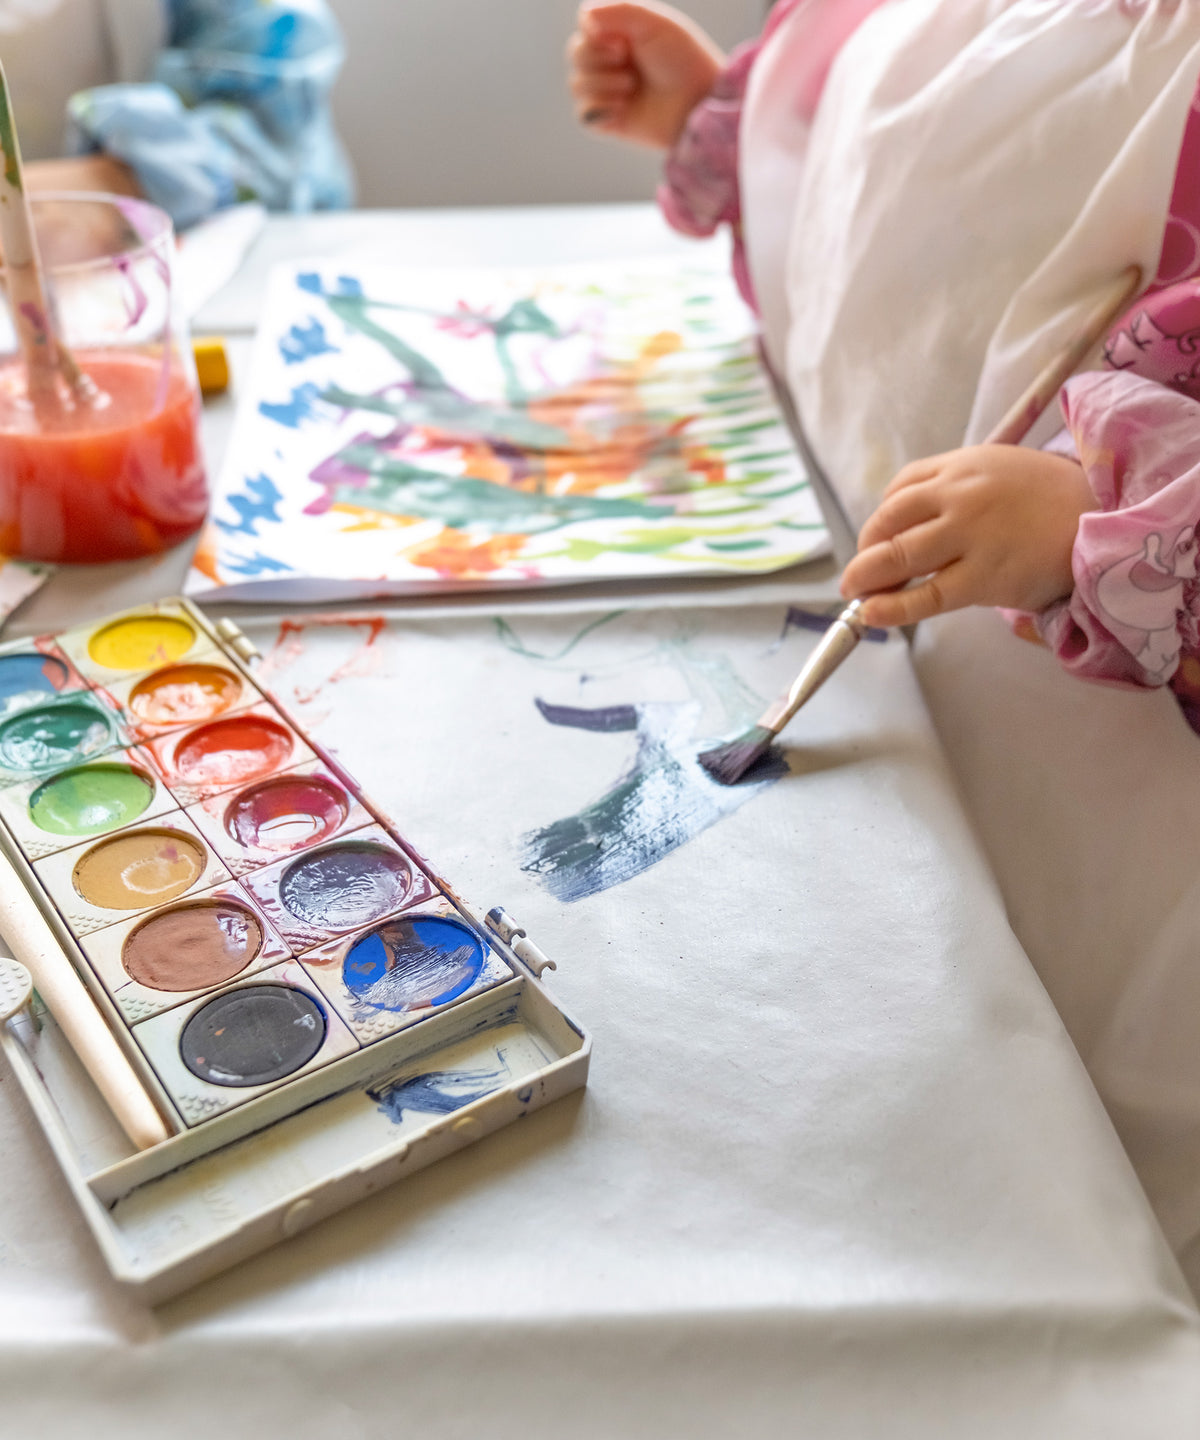 Kinder malen mit Wassermalfarben auf der Mal- und Bastelunterlage.